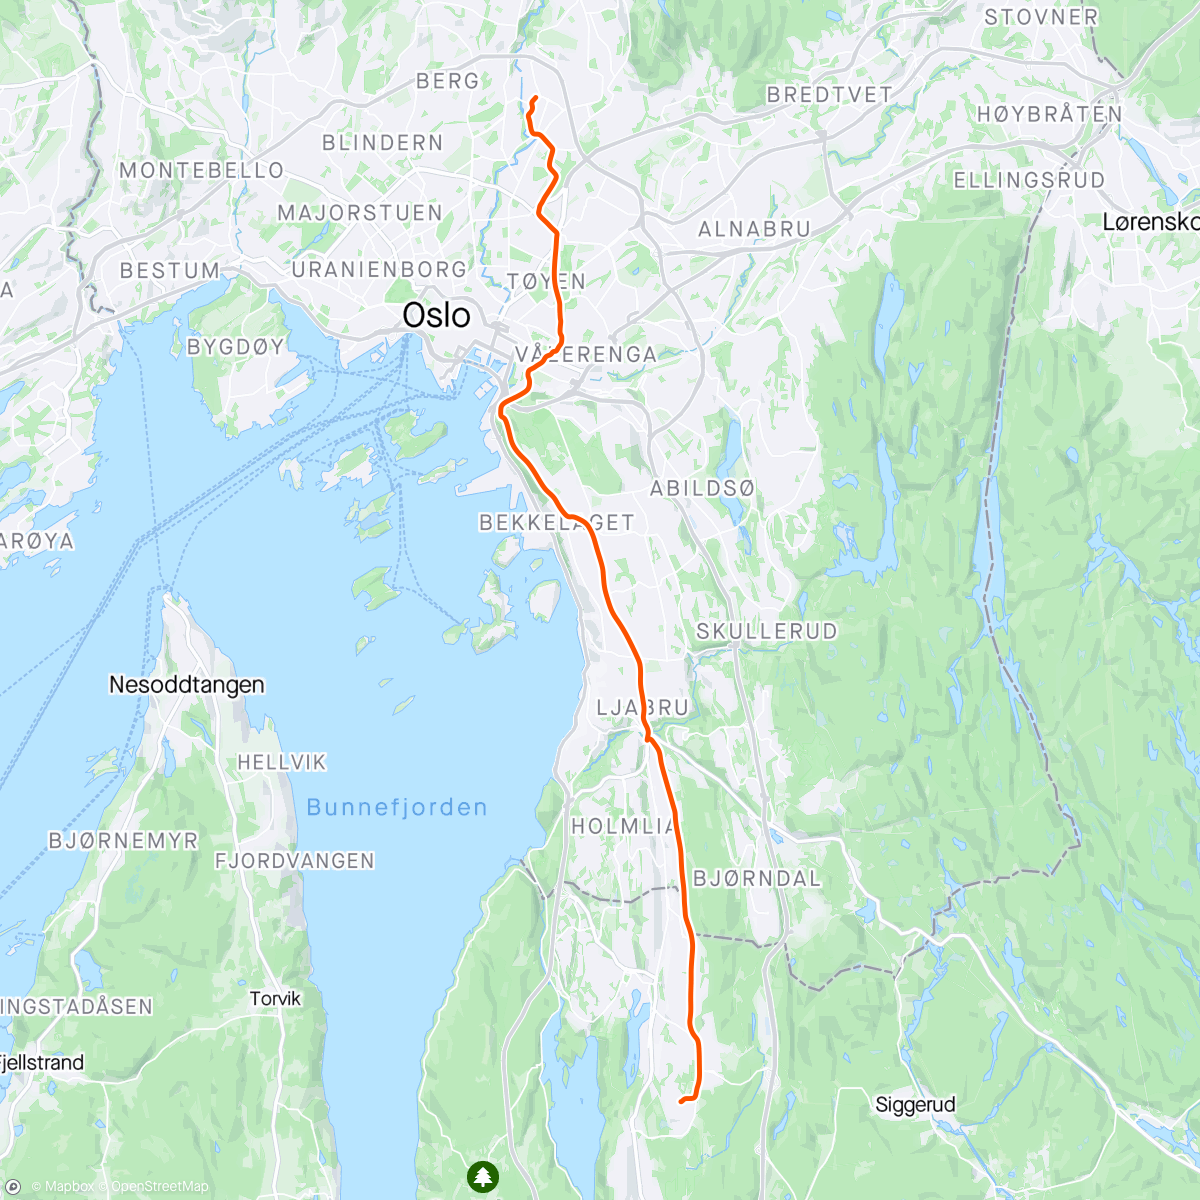 「Blomstring på Tøyen」活動的地圖